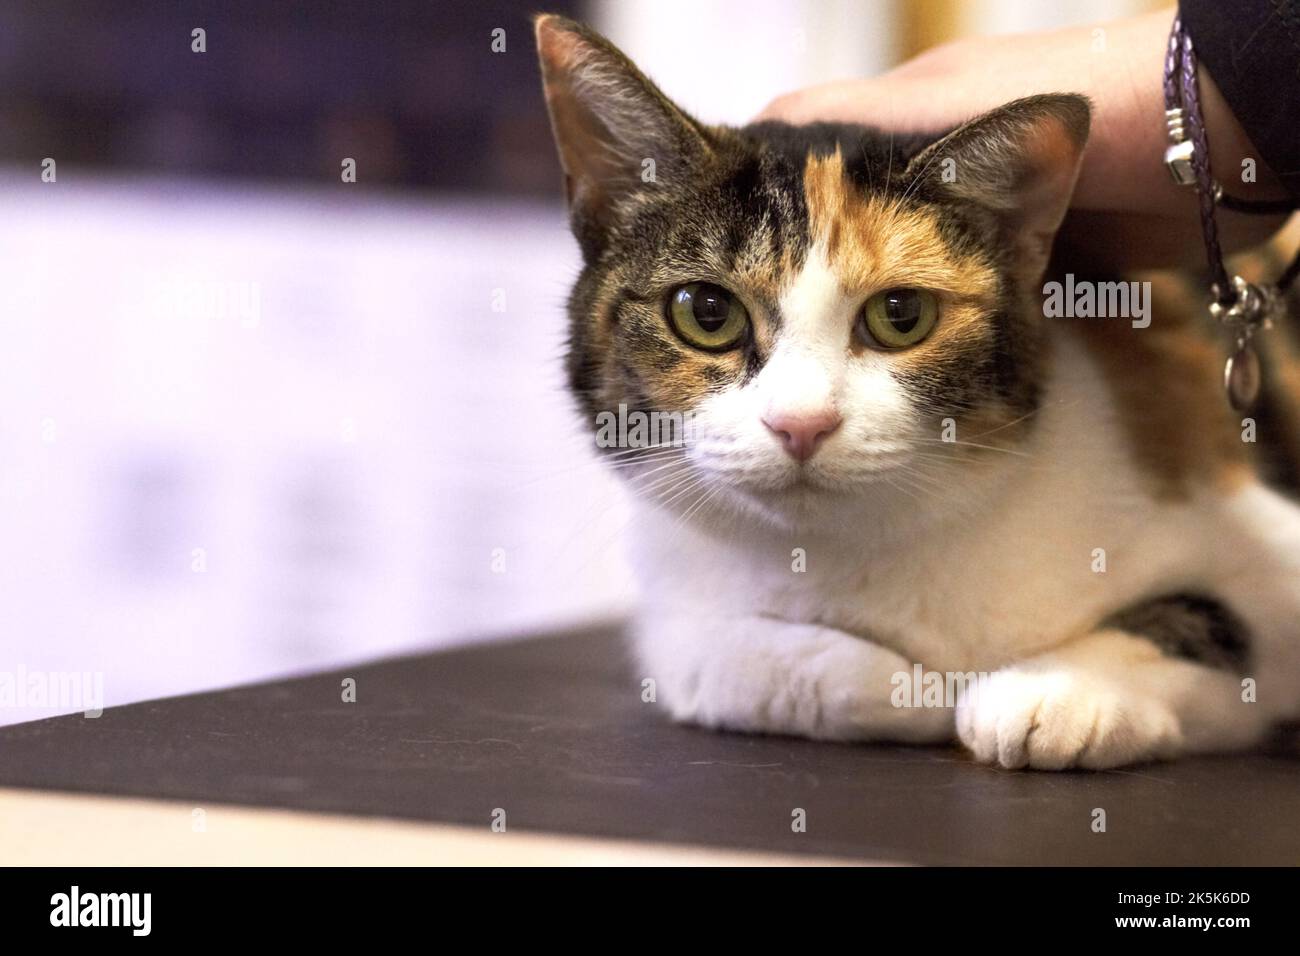 Hol mich hier raus. Porträt einer entzückenden Katze auf dem Untersuchungstisch. Stockfoto